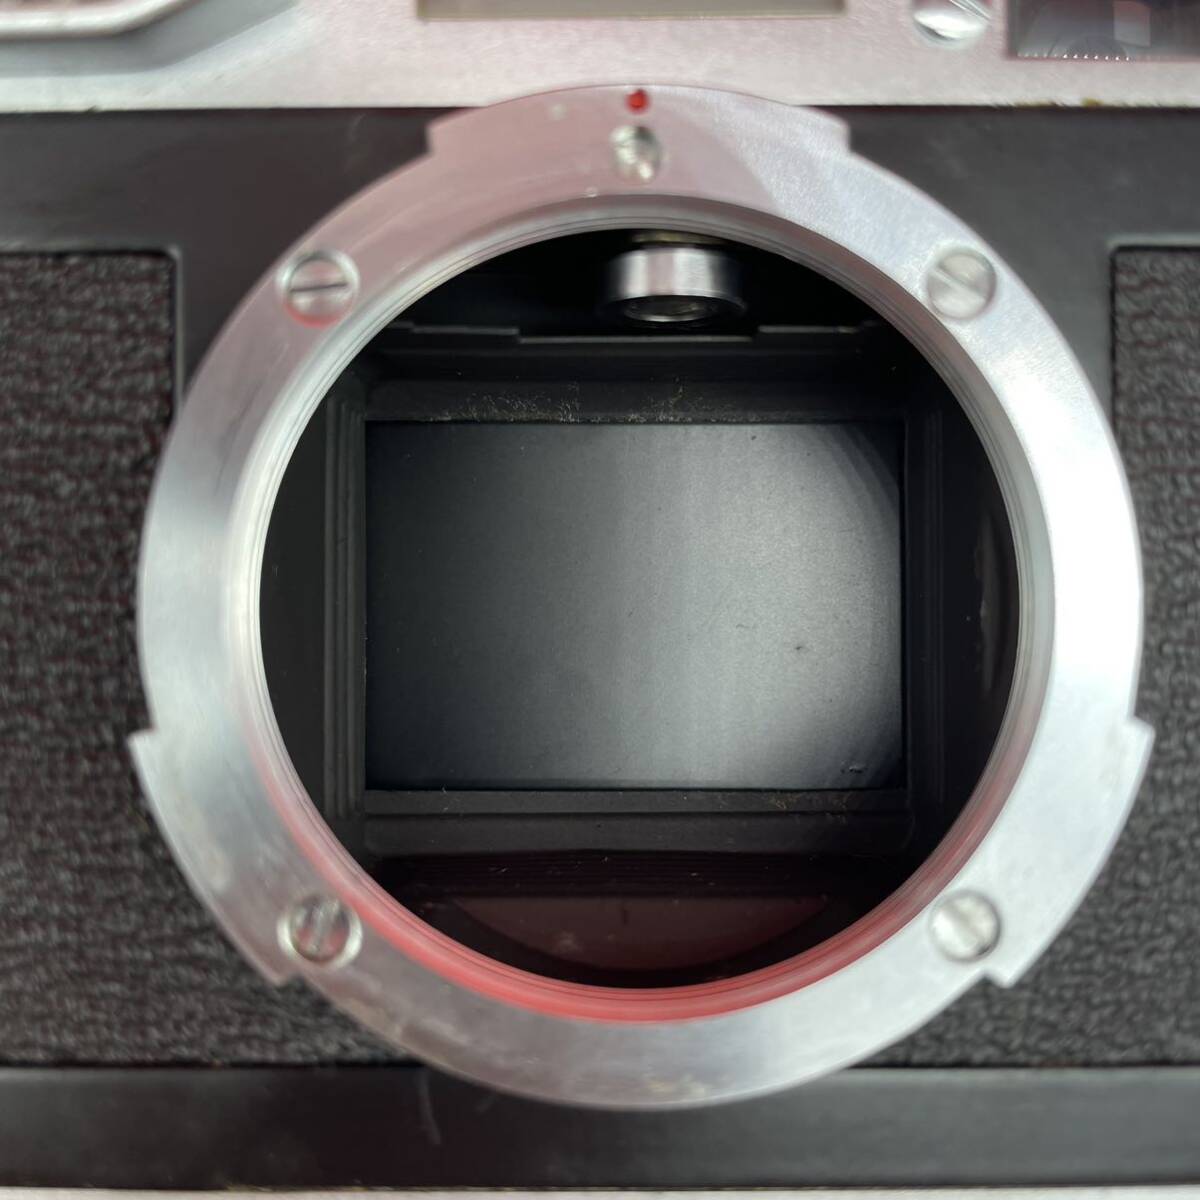 □ Canon MODEL7 ボディ CANON LENS 50mm F0.95 ドリームレンズ レンジファインダー 標準単焦点レンズ 大口径 シャッターOK キャノン